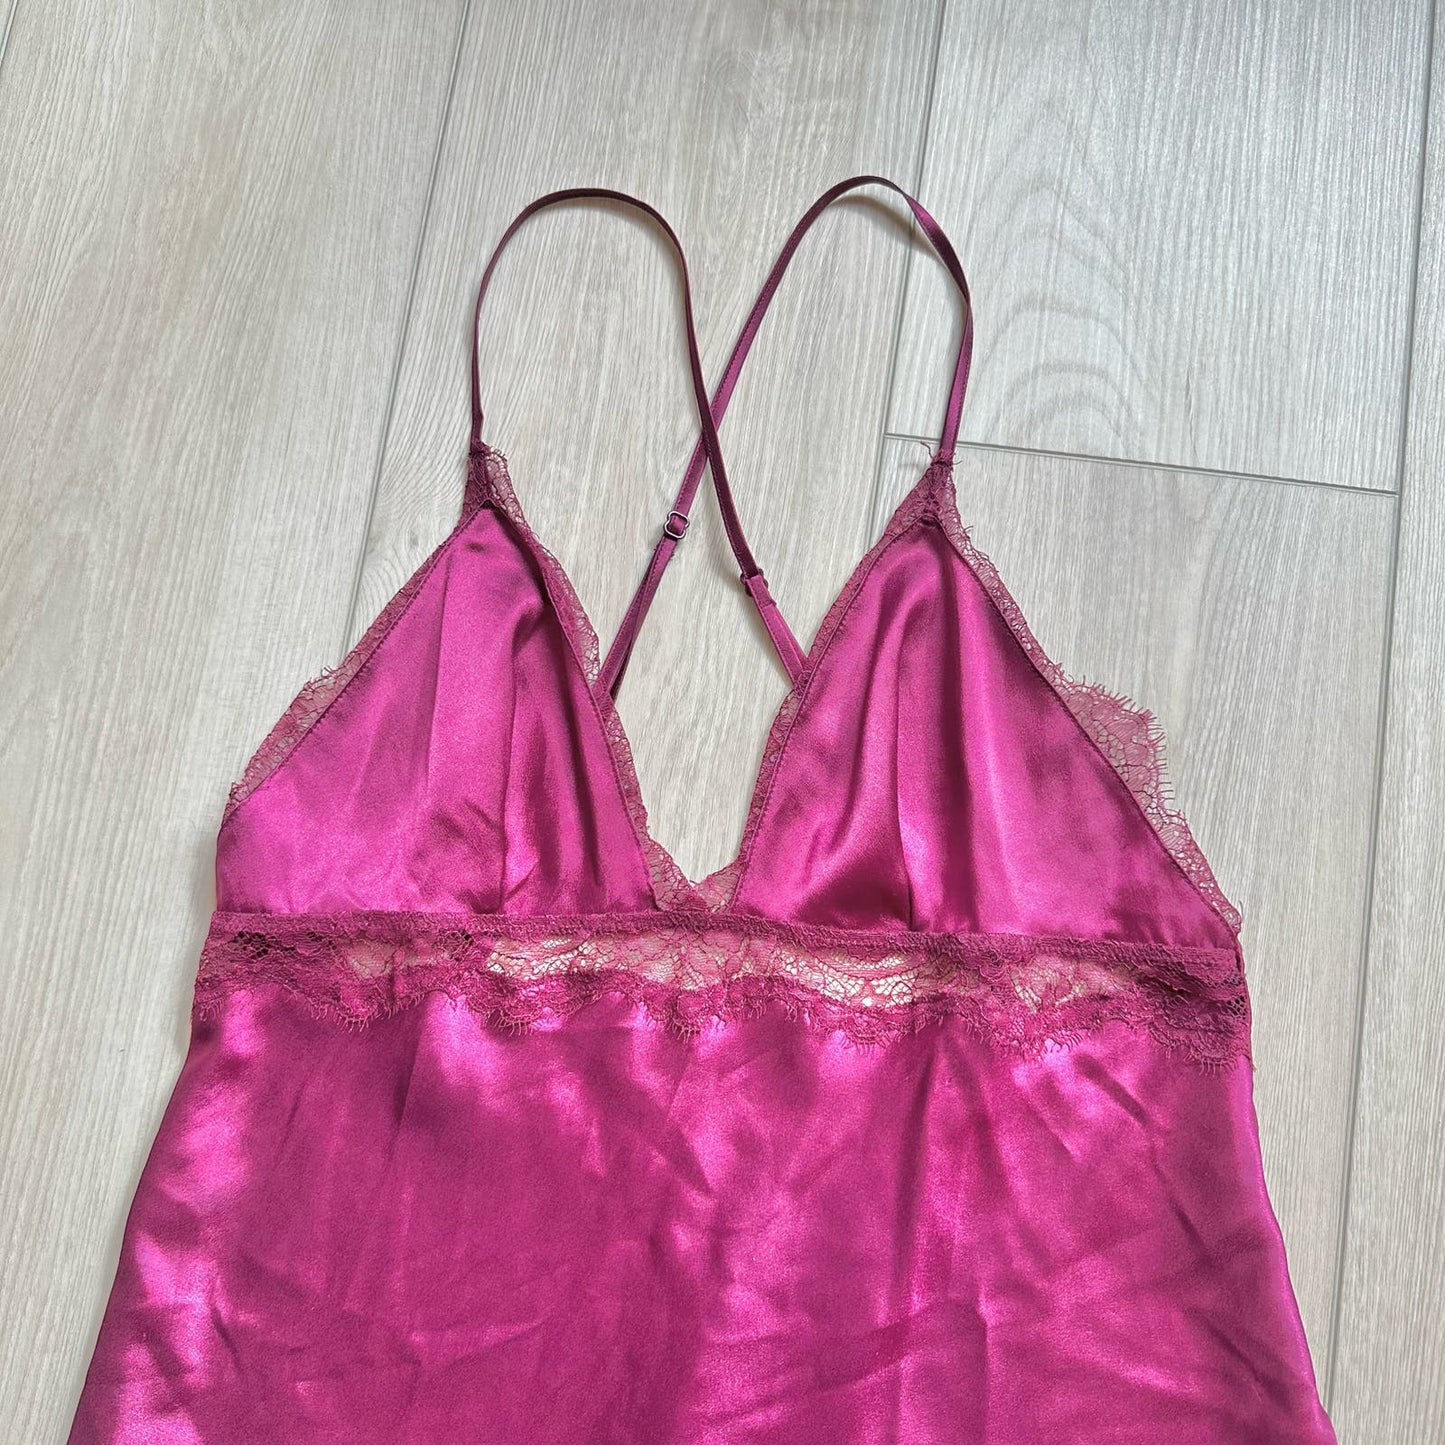 Victoria's Secret purple satin lace lingerie dress